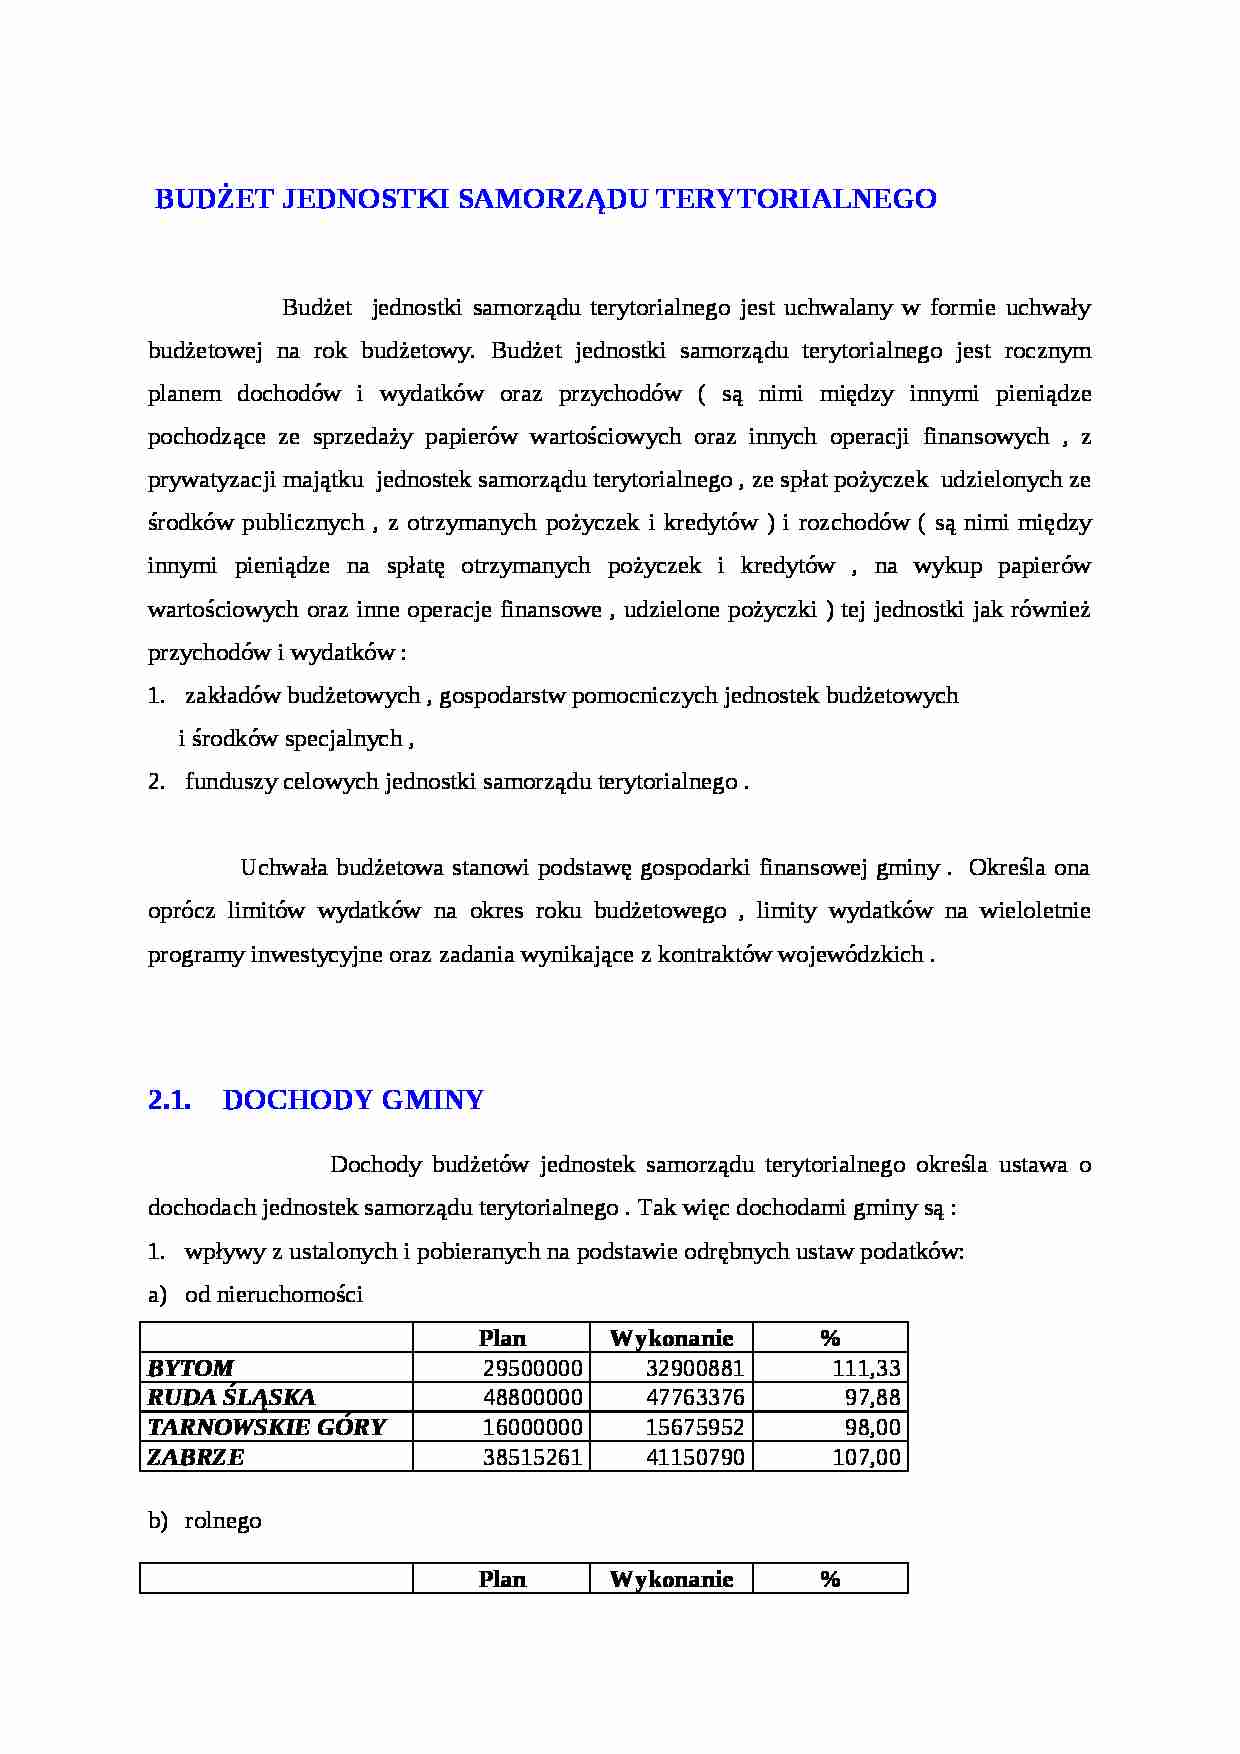 Budżet jednostki samorządu terytorialnego- dochody gminy - strona 1